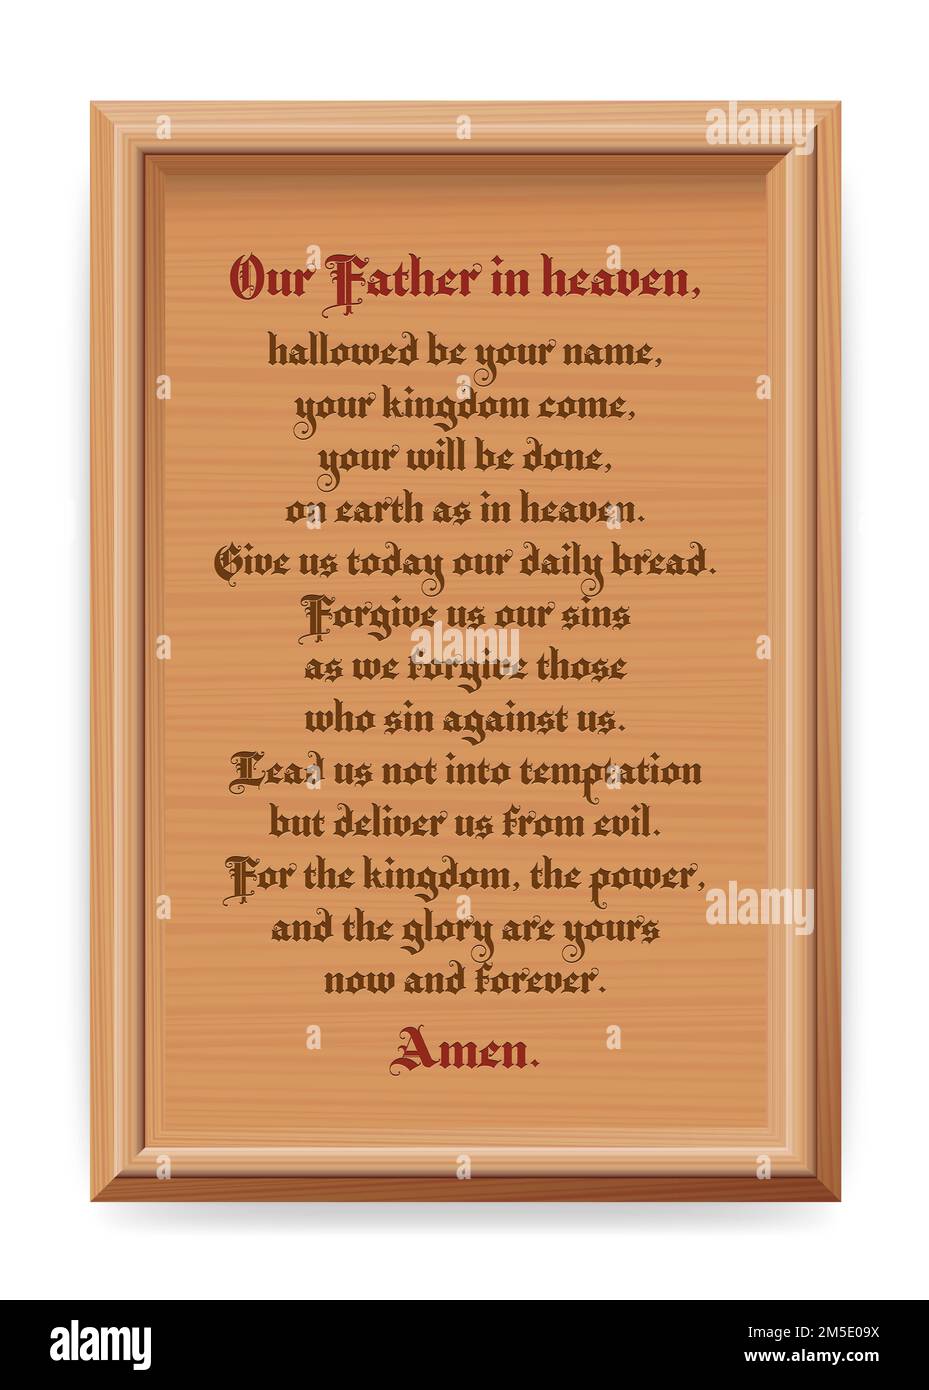 Lords Gebete, unser Vater, Pater Noster, geheiligt werde dein Name. Zeitgenössische Version des zentralen christlichen Gebets, geschnitzt in eine Holzrahmenplatte. Stockfoto